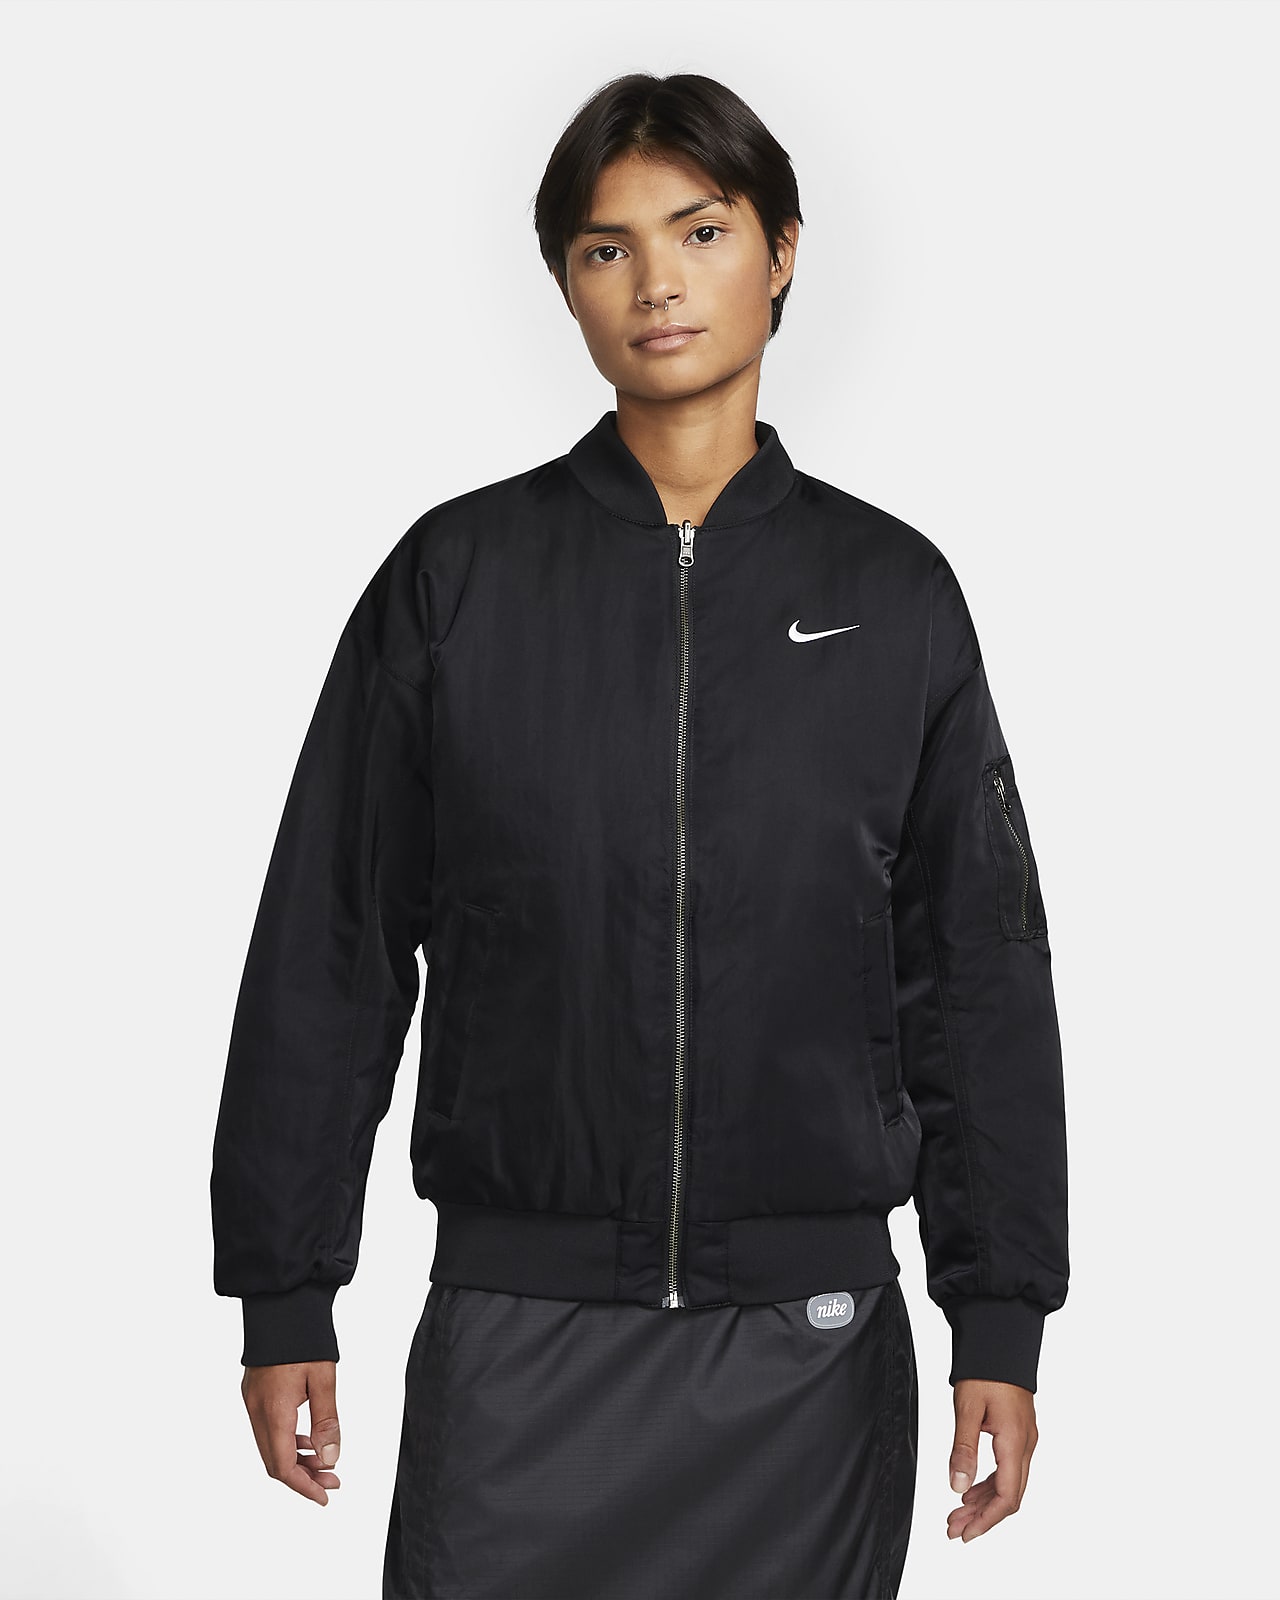 Nike Sportswear kifordítható női egyetemi pilótakabát